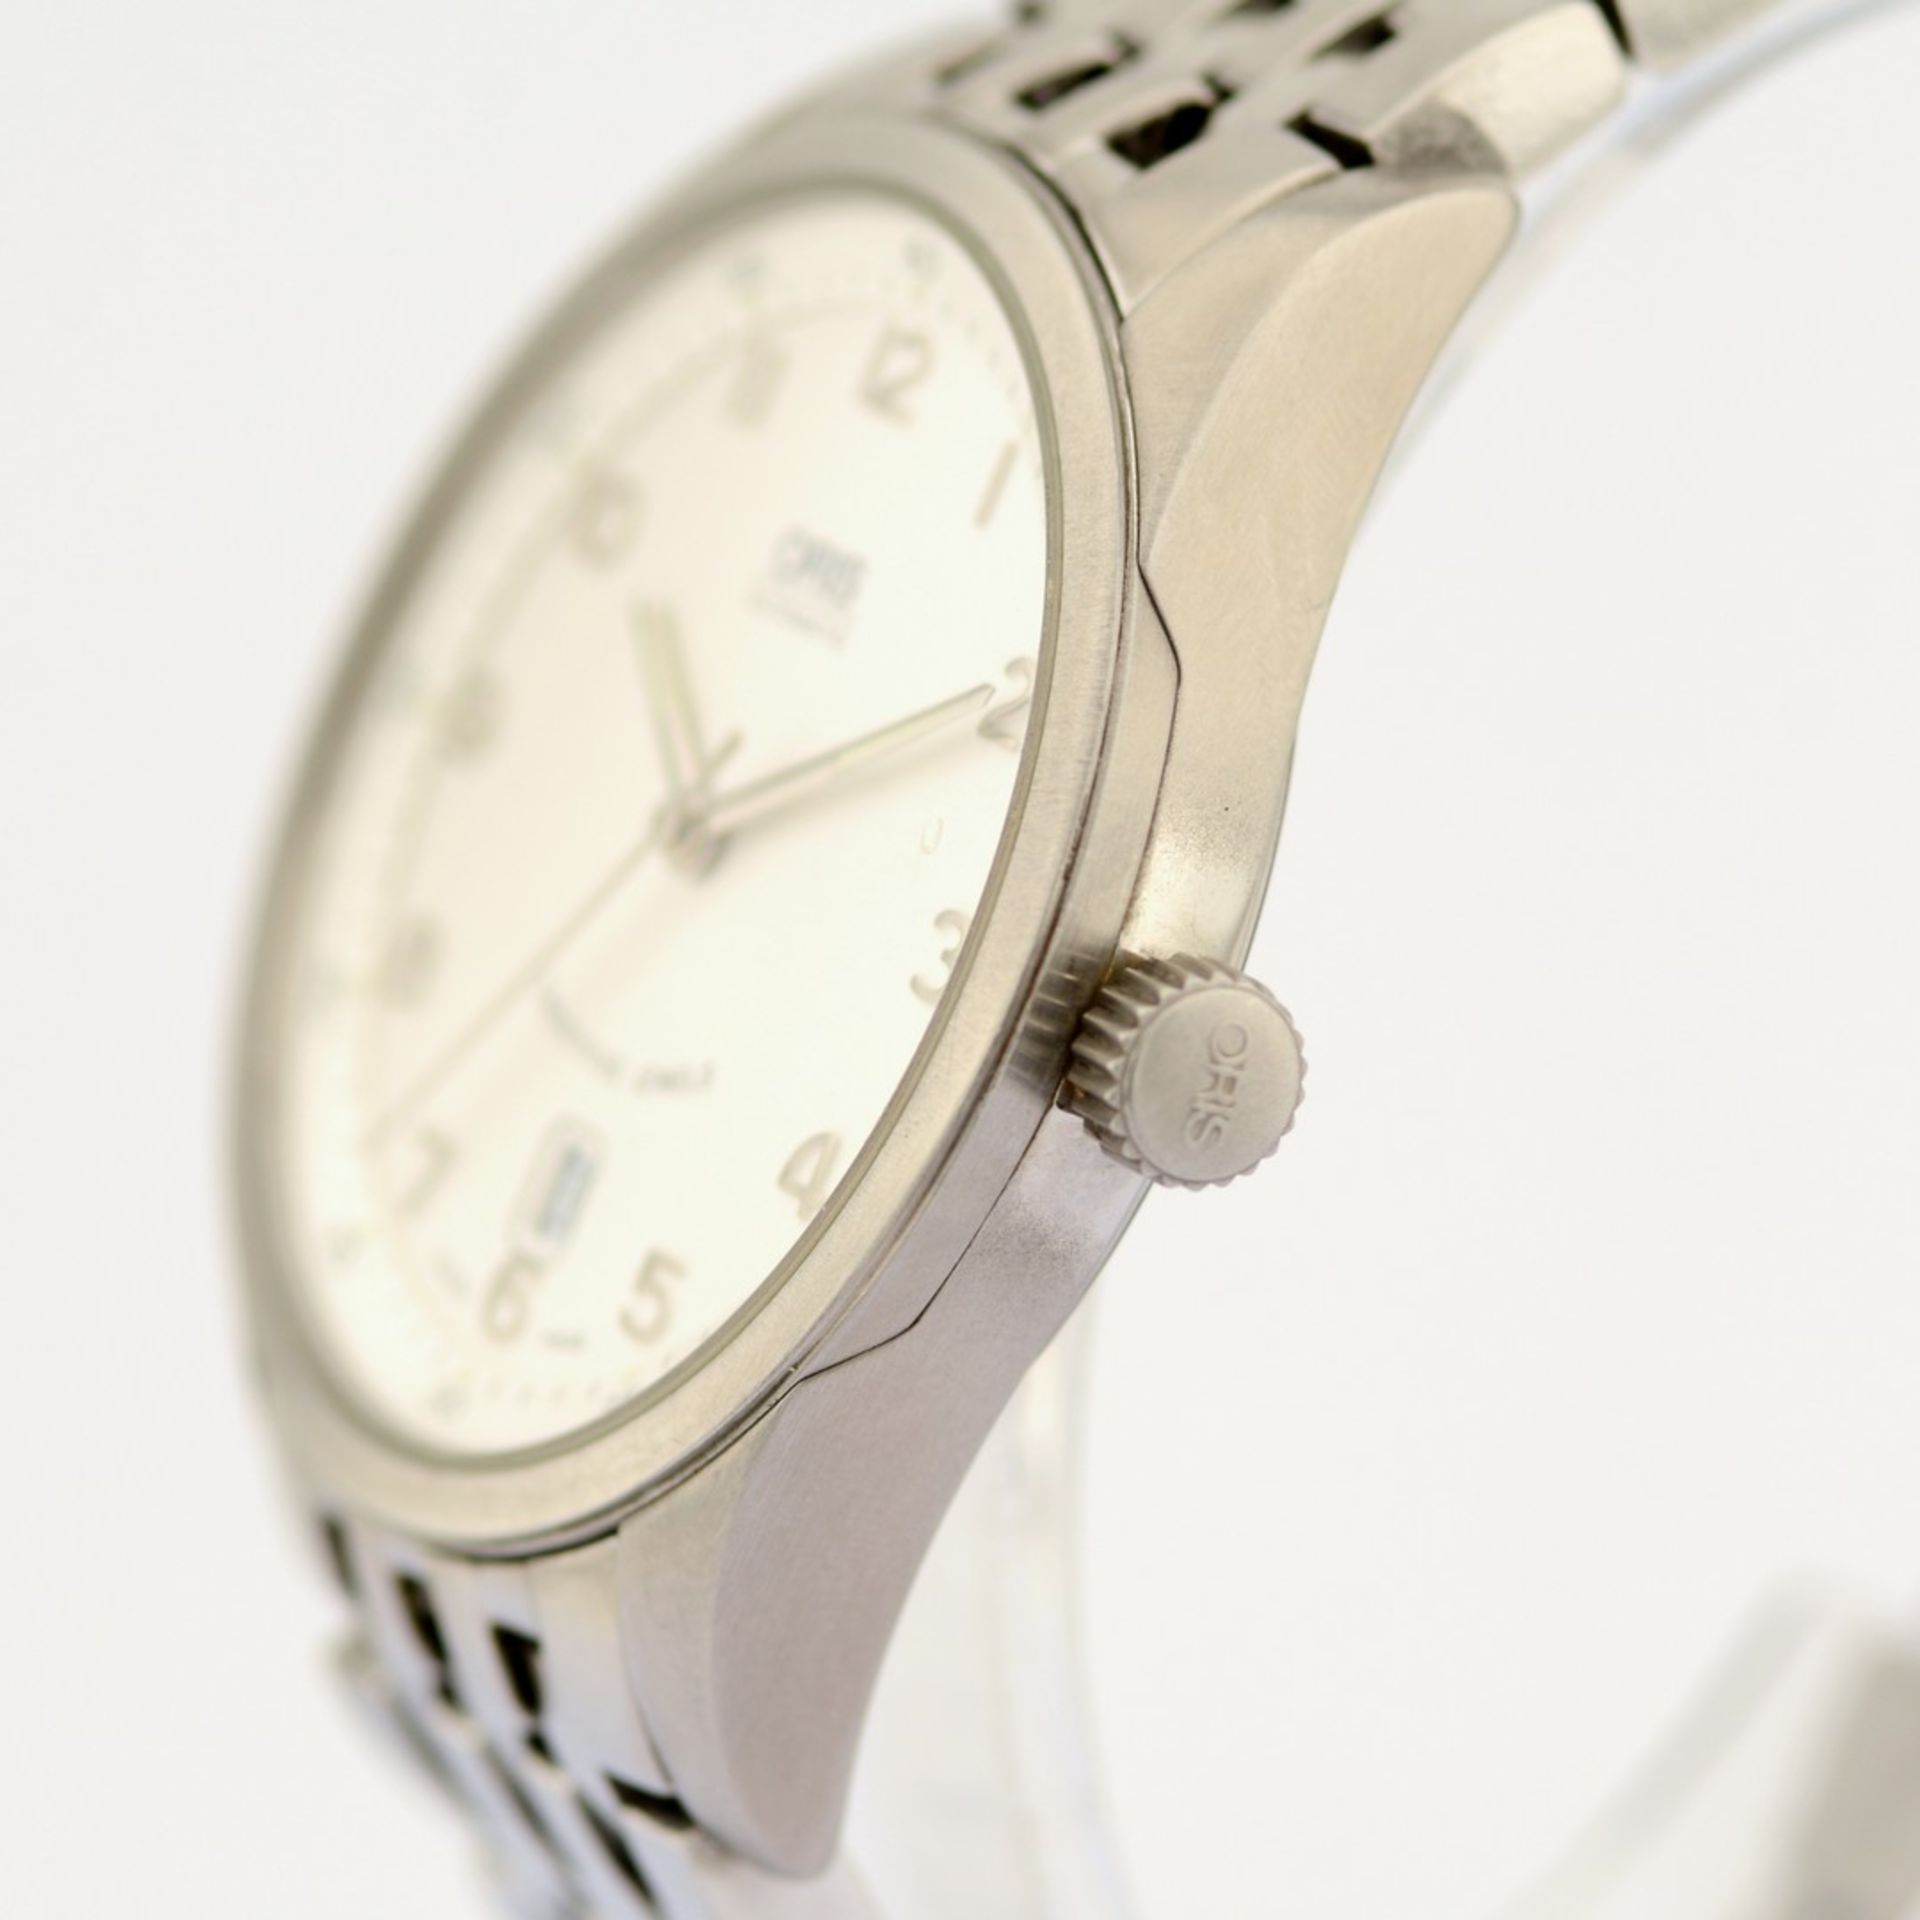 Oris / Classic Date XXL 7504 - Gentlemen's Steel Wristwatch - Image 5 of 7